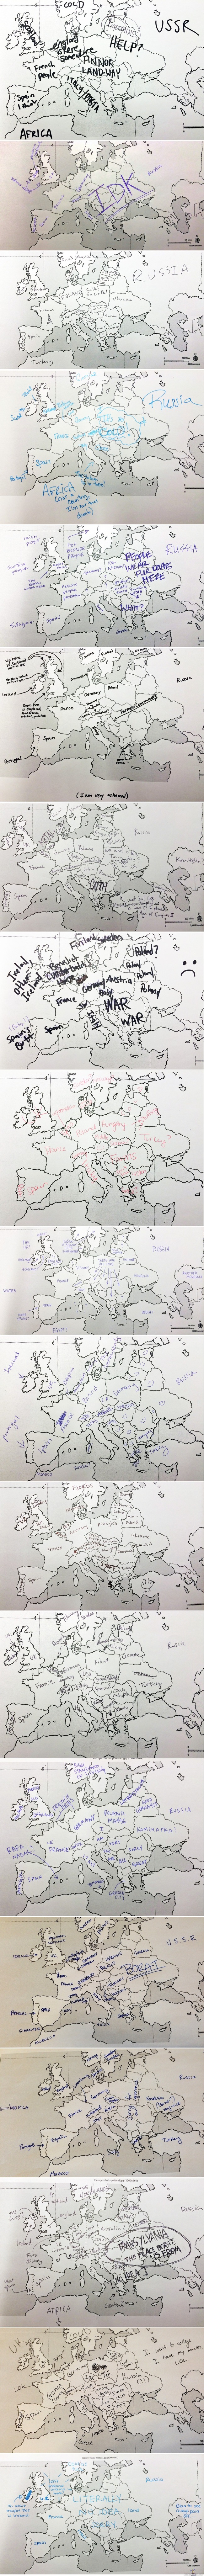 Jenkkien maantiedontuntemus - Buzzfeed-sivusto testasi, miten hyvin amerikkalaiset tuntevat Euroopan maantiedettä. Vastaajat saivat eteensä Euroopan kartan, josta puuttuivat valtioiden nimet. Vastaajat yrittivät sijoittaa valtiot oikeille paikoilleen. http://www.buzzfeed.com/summeranne/americans-try-to-place-european-countries-on-a-maprnps. Suomi mainittu!